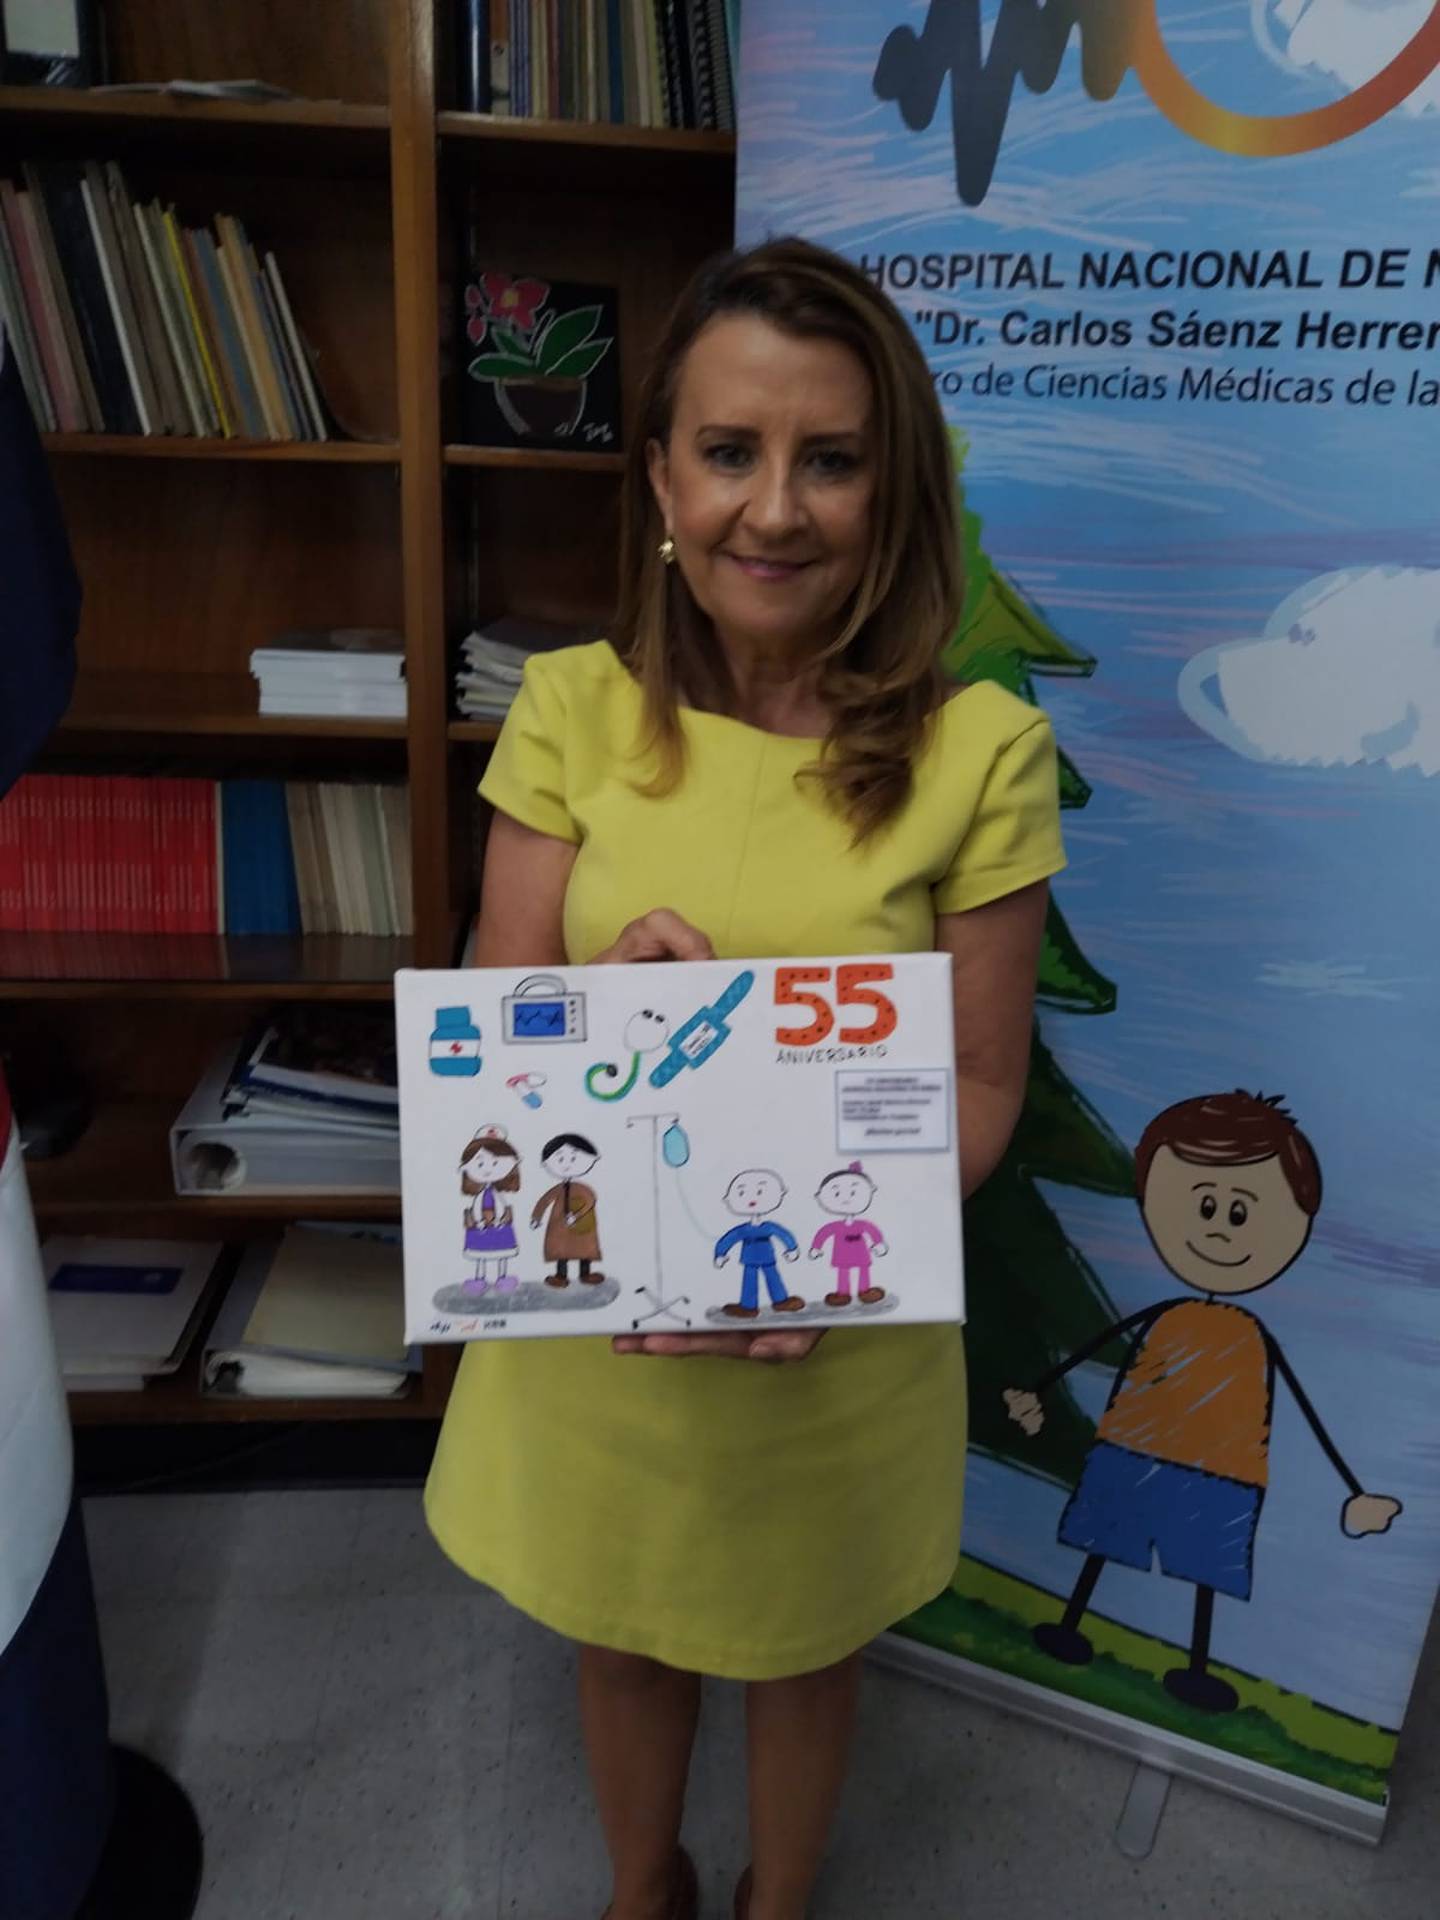 La doctora Olga Arguedas Arguedas, después de 38 años trabajando con la CCSS, los últimos 8 como directora del Hospital Nacional de Niños, se pensionó el viernes 11 de agosto del 2023. Atendió a La Teja para una entrevista en el Hospital de Niños el 15 de agosto de 2023.